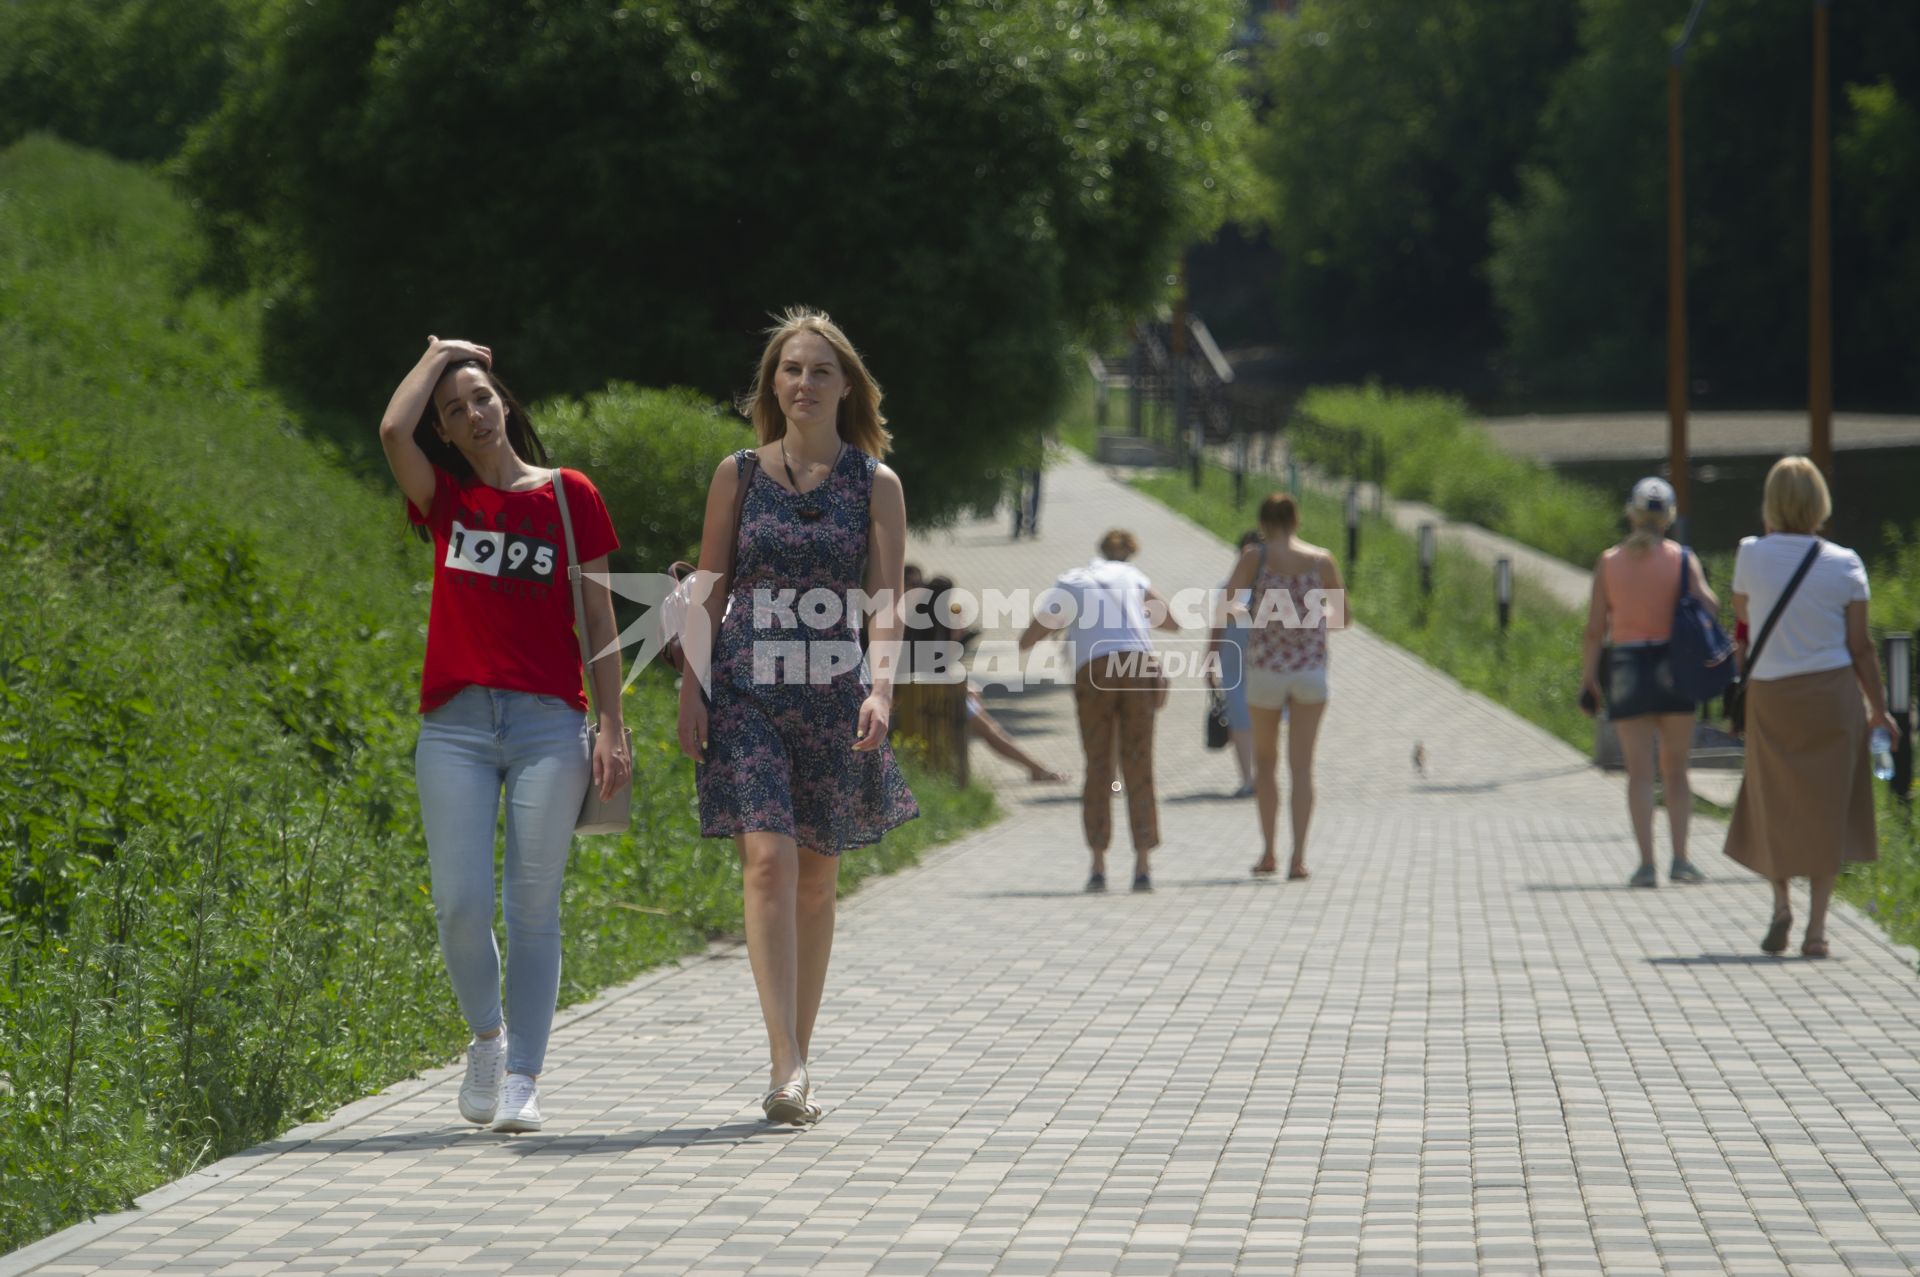 Екатеринбург. Девушки гуляют по набережной во время ослабления режима самоизоляции, введеного для нераспространения новой коронавирусной инфекции COVID-19